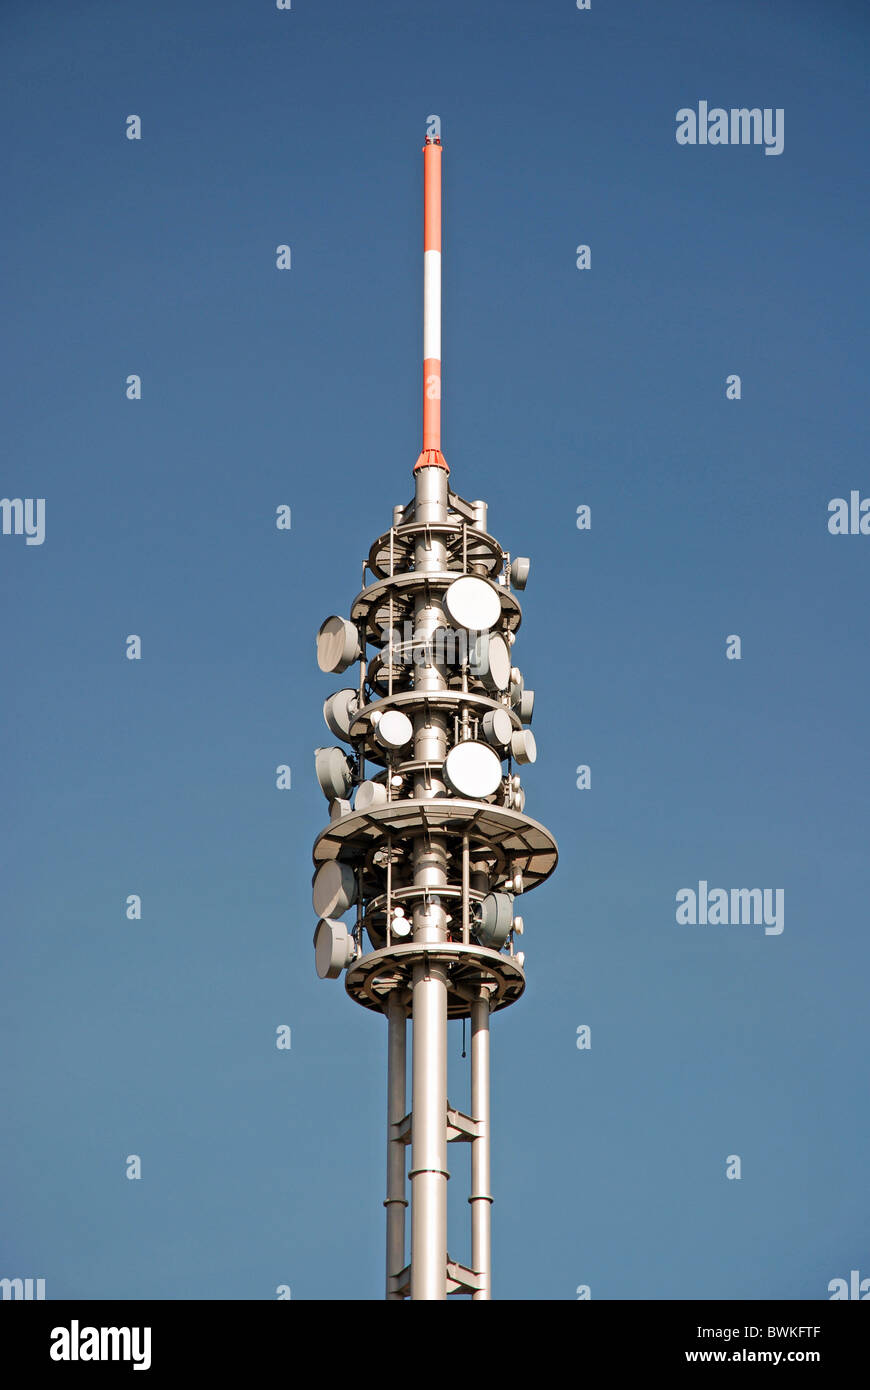 Antenne directionnelle télécom antennes radio télécommunications  technologie de communication pôle mât technics di Photo Stock - Alamy